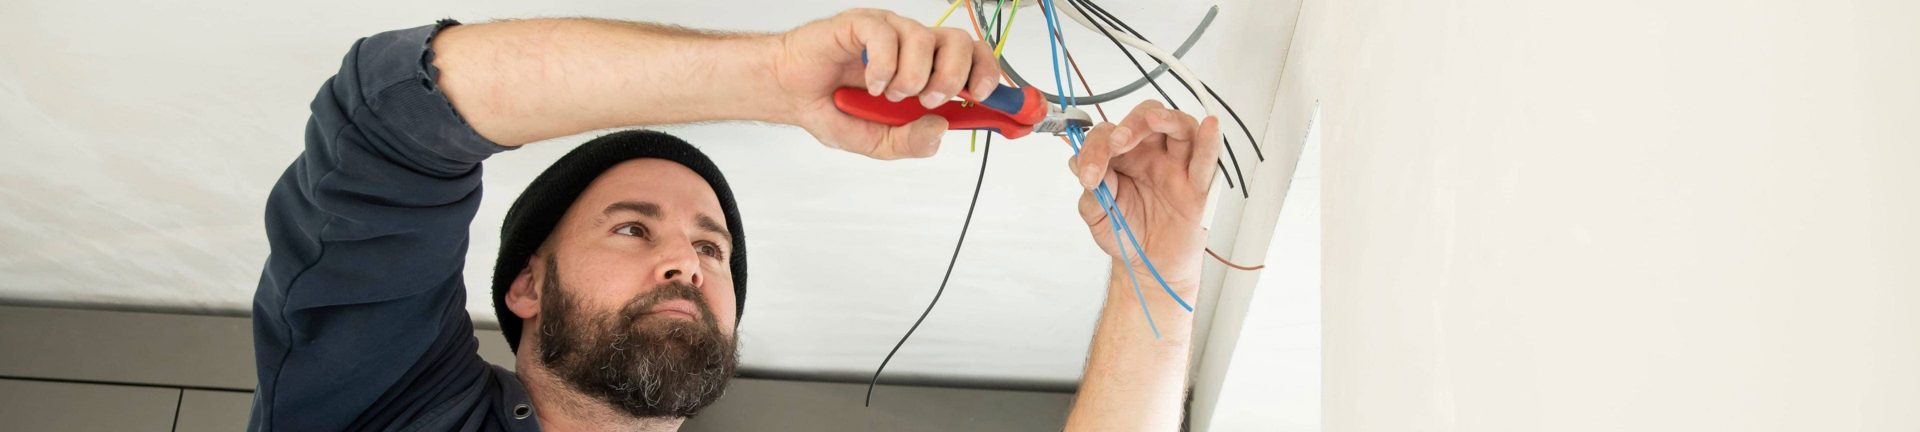 Bauleitender Elektroinstallateur (w/m) Featured Image